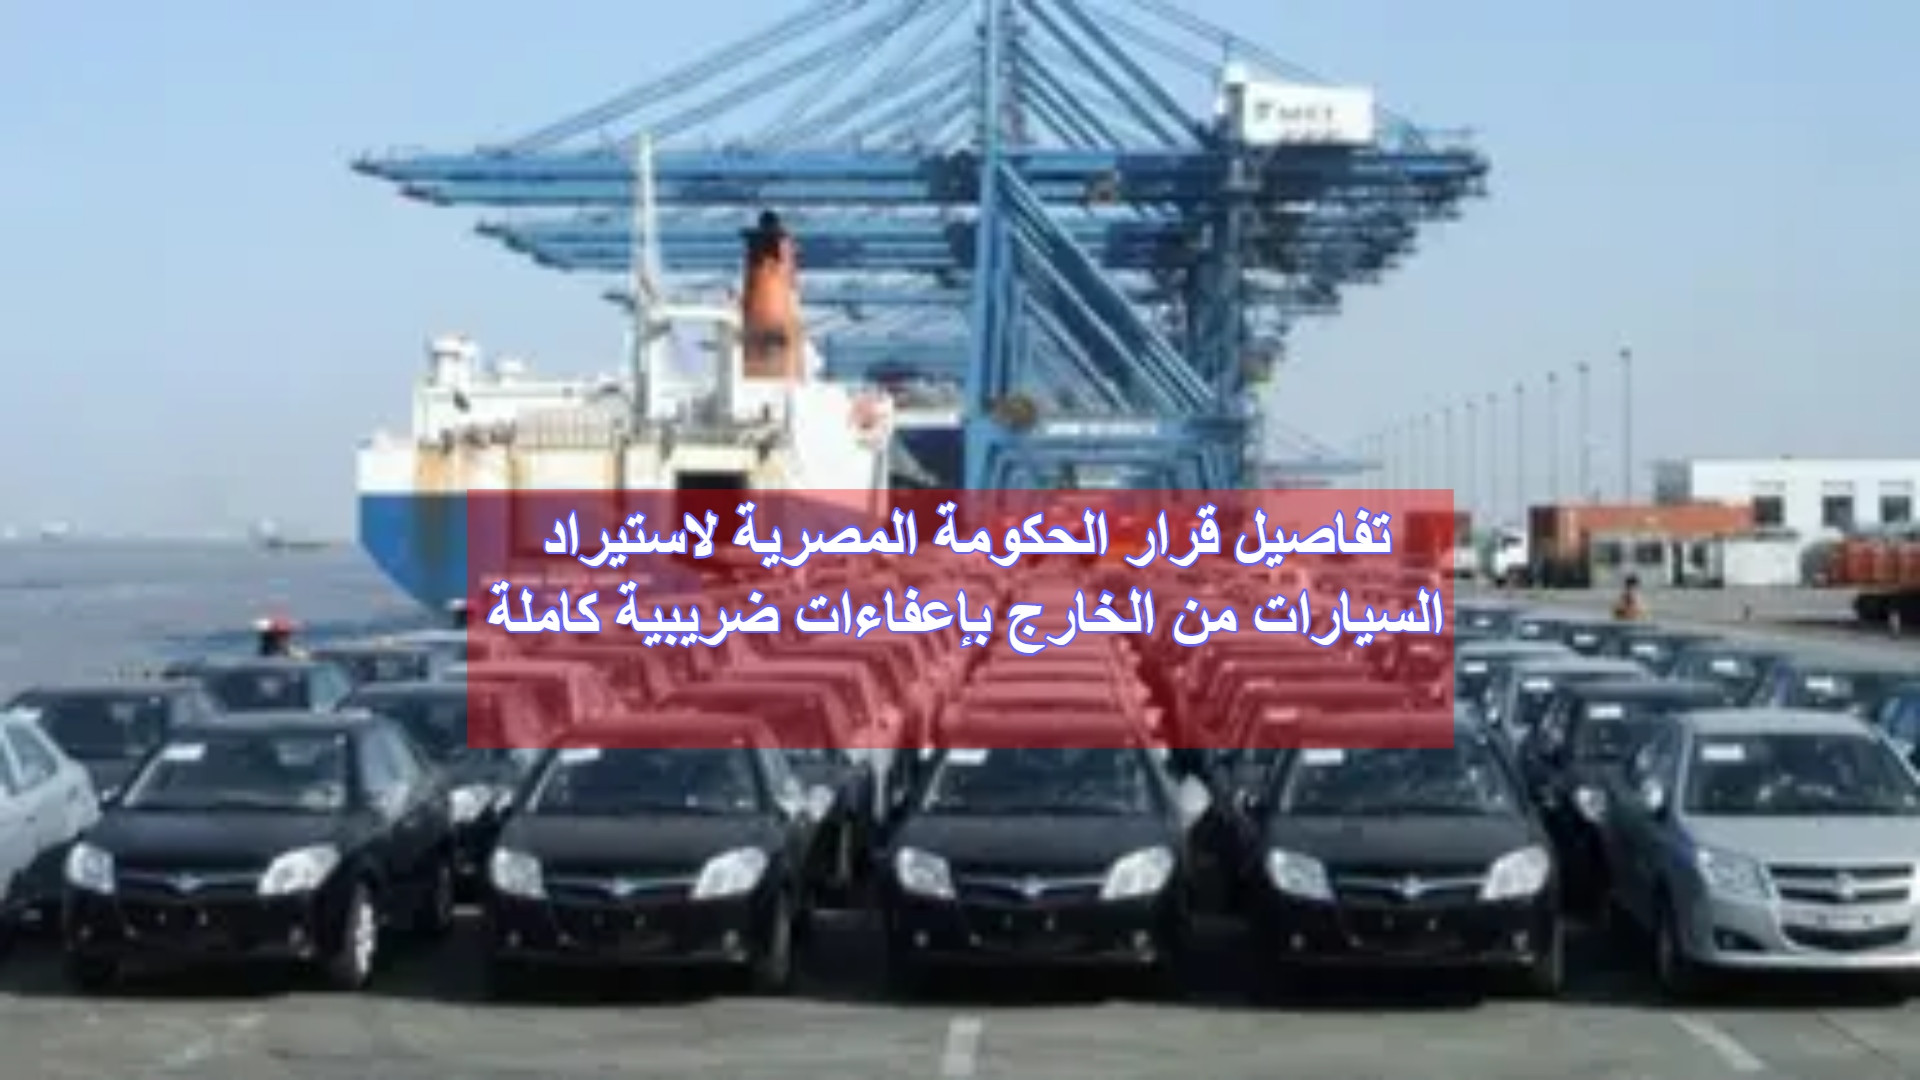 تفاصيل قرار الحكومة المصرية لاستيراد السيارات من الخارج بإعفاءات ضريبية كاملة